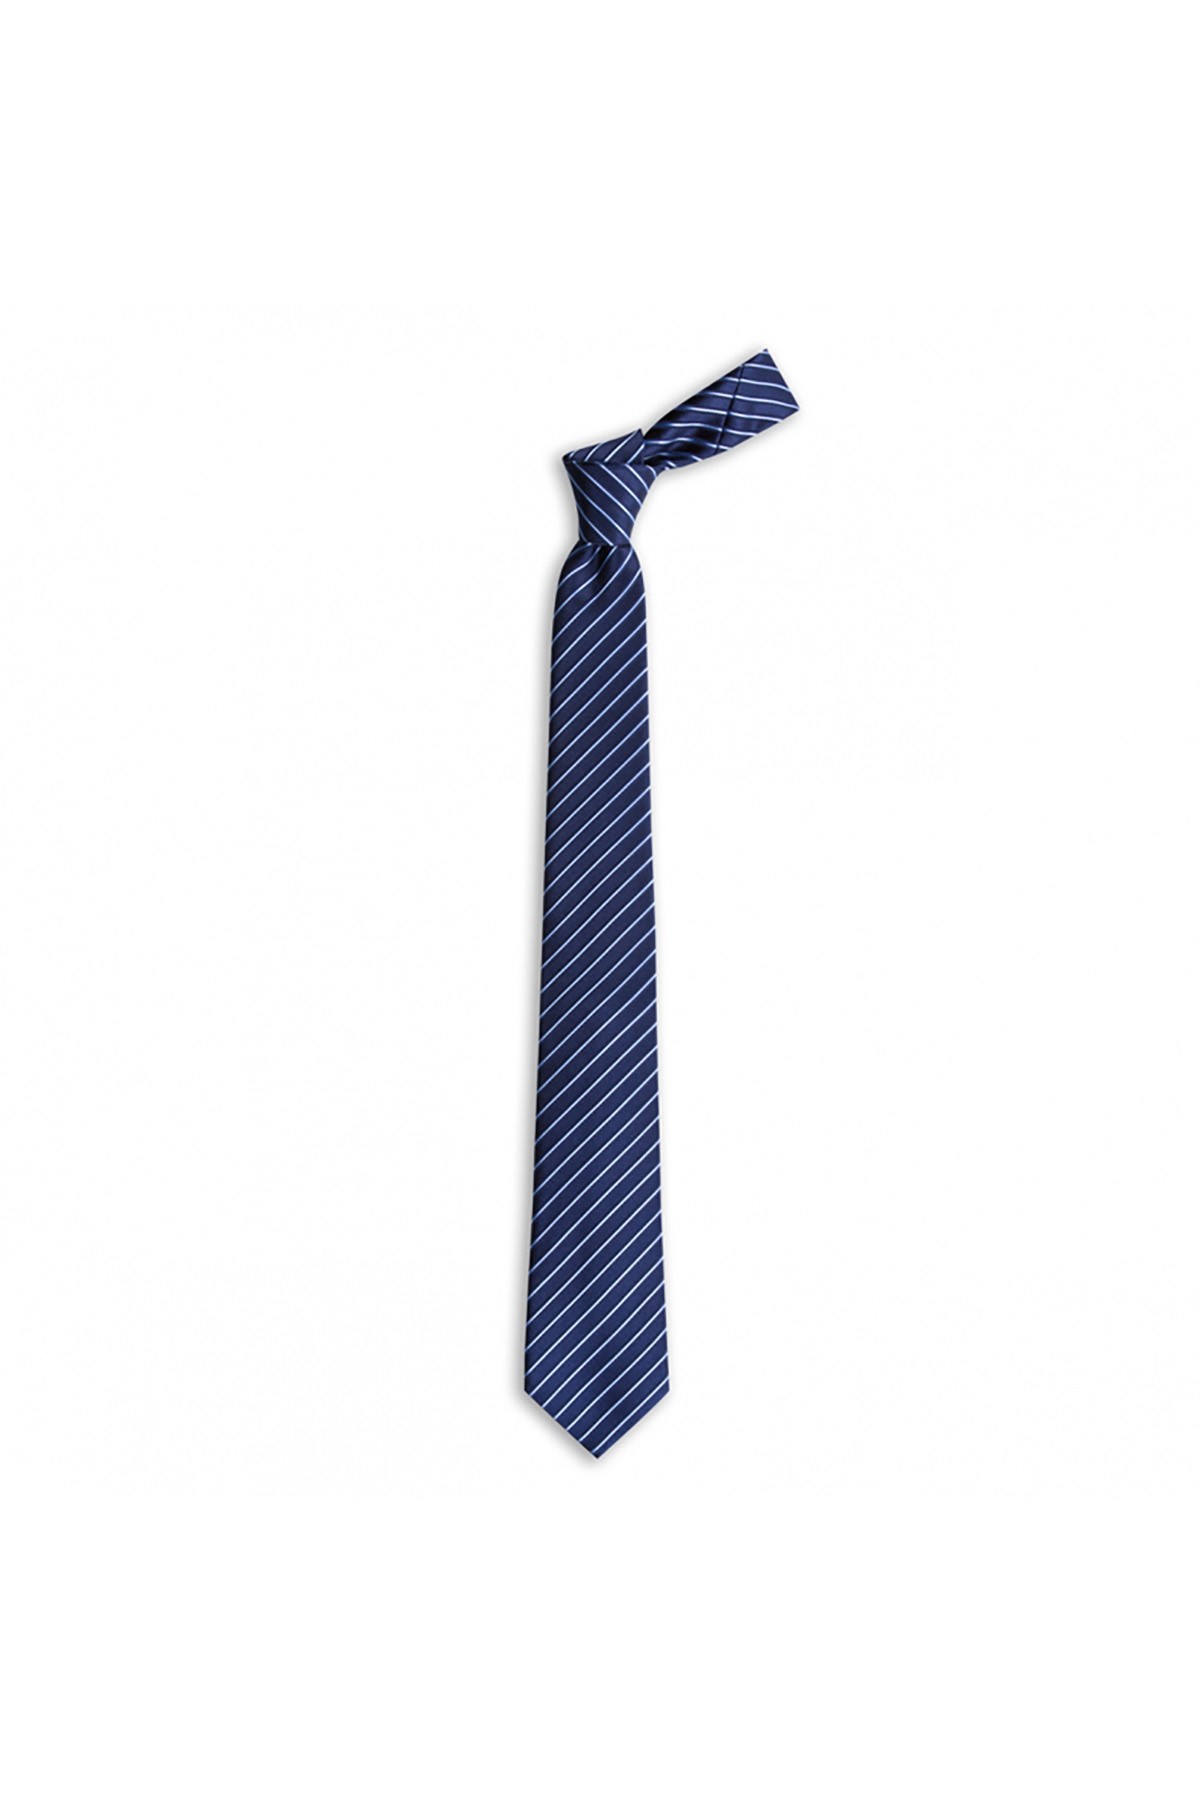 İnce çizgili 7,5 cm genişliğinde ipek kravat